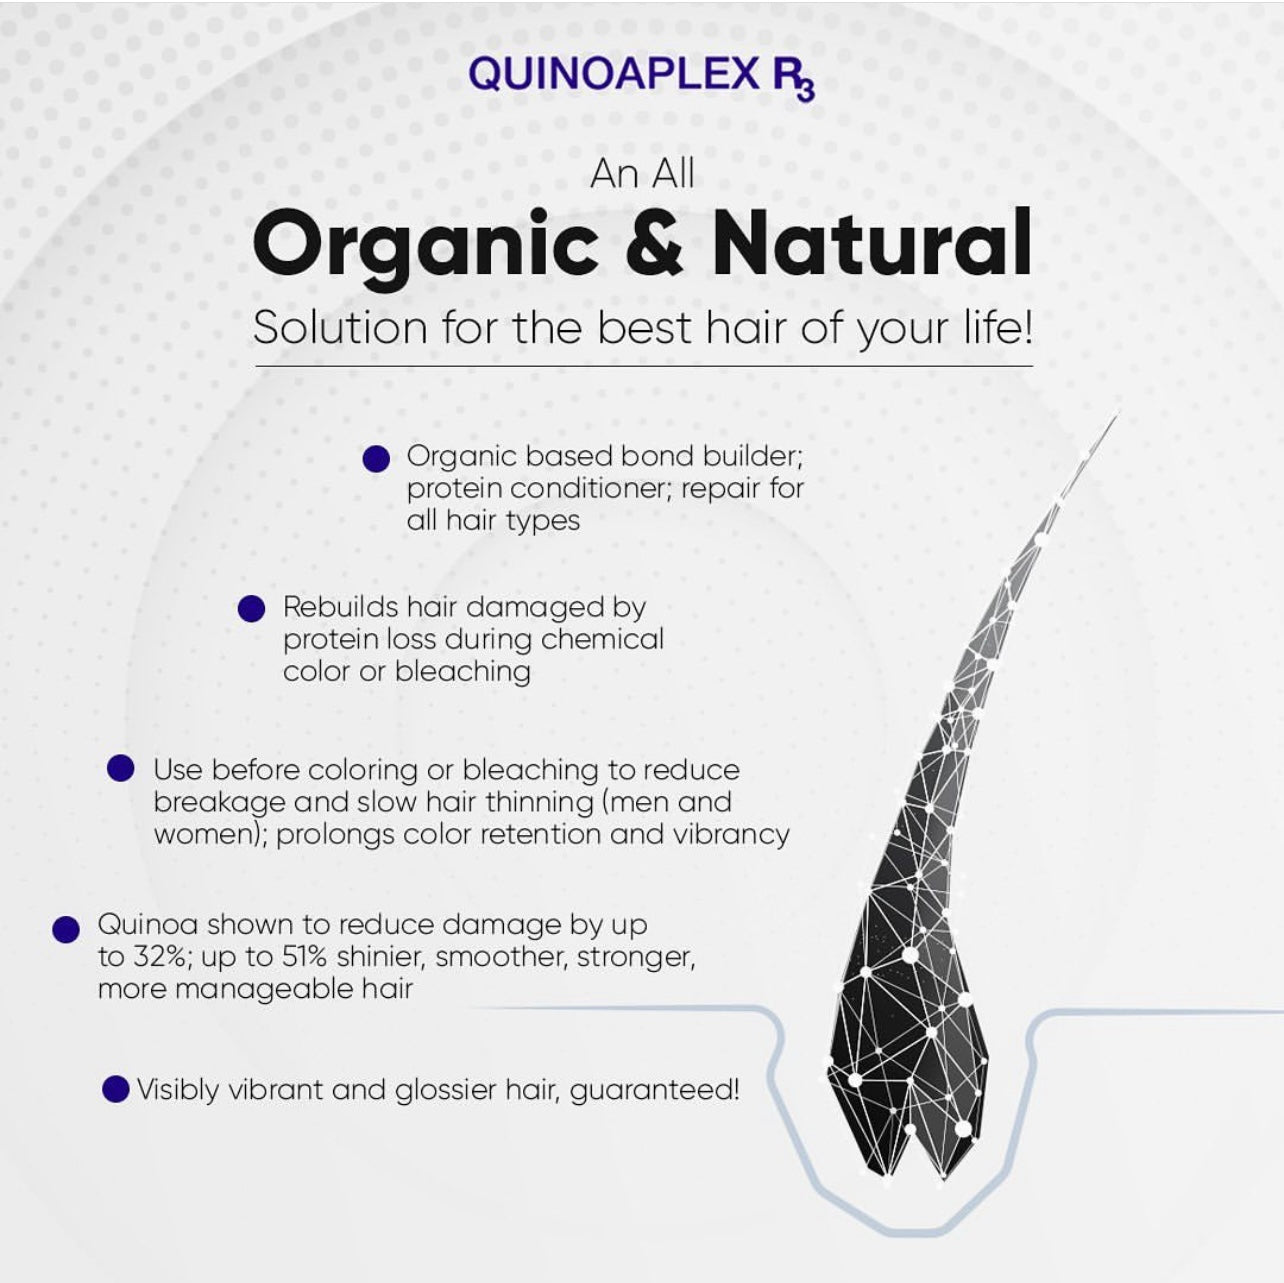 ONC ANTI HAIR LOSS Shampoo + QUINOAPLEX R3 Rapid Hair Renewal bundle Quinoaplex feat. 